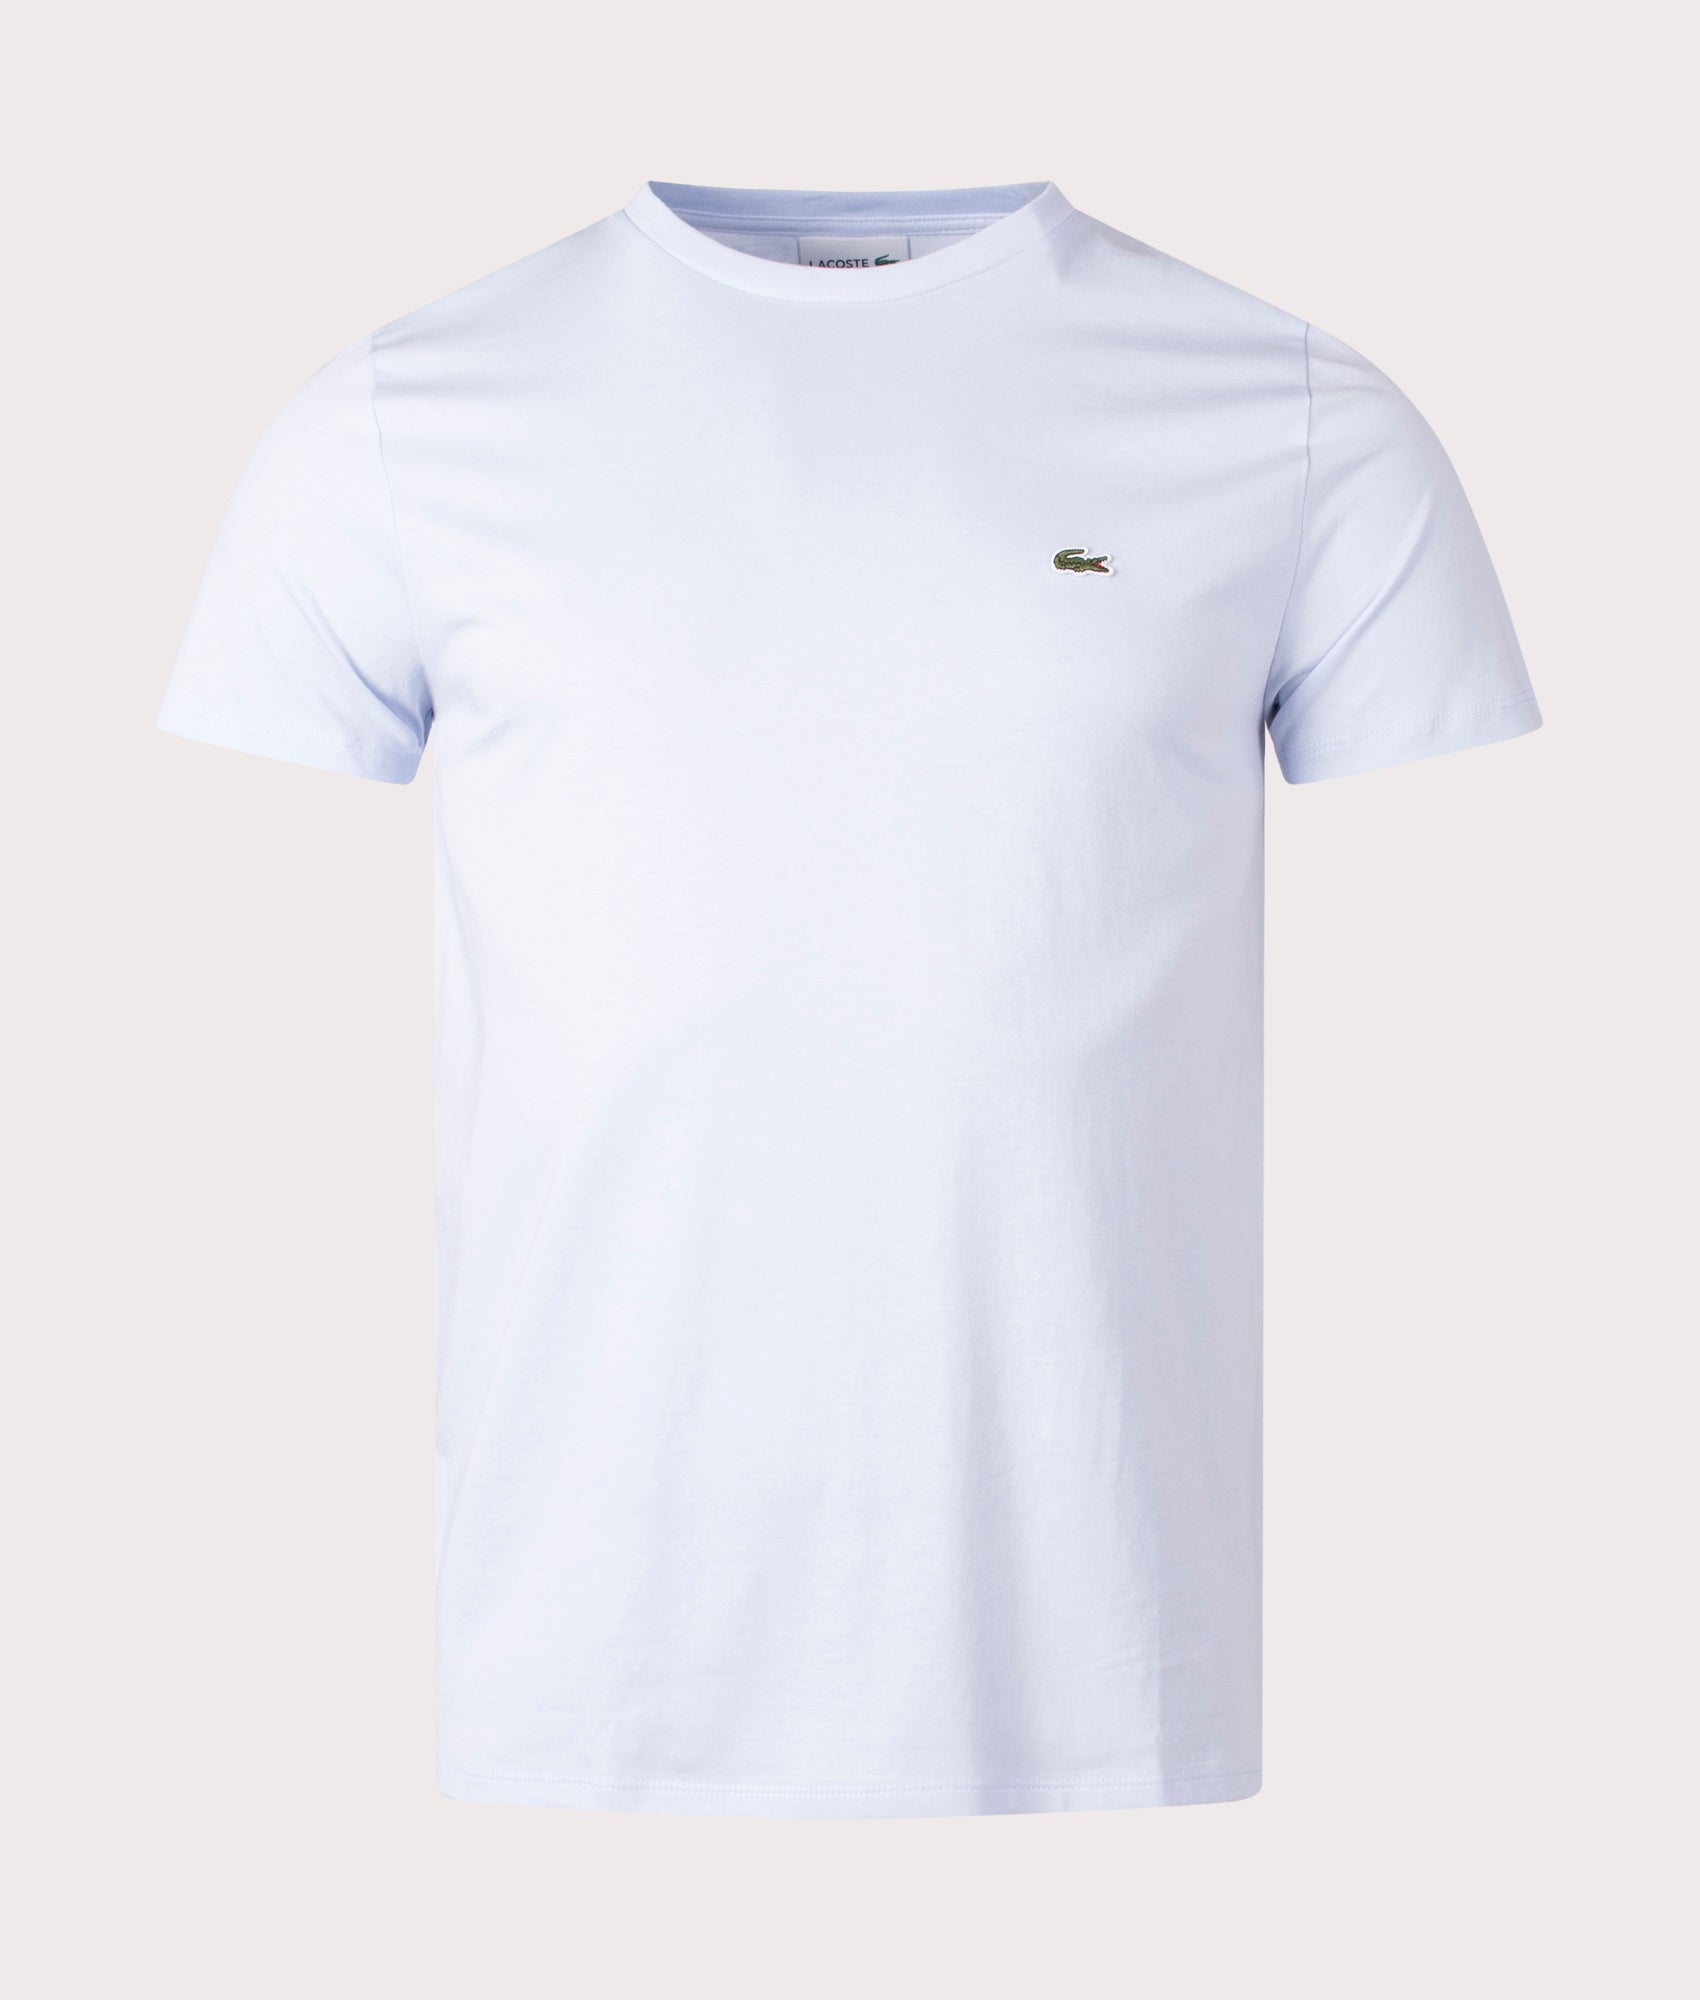 Lacoste Mens Pima Cotton Croc Logo T-Shirt - Colour: J2G Phoenix Blue - Size: 6/XL